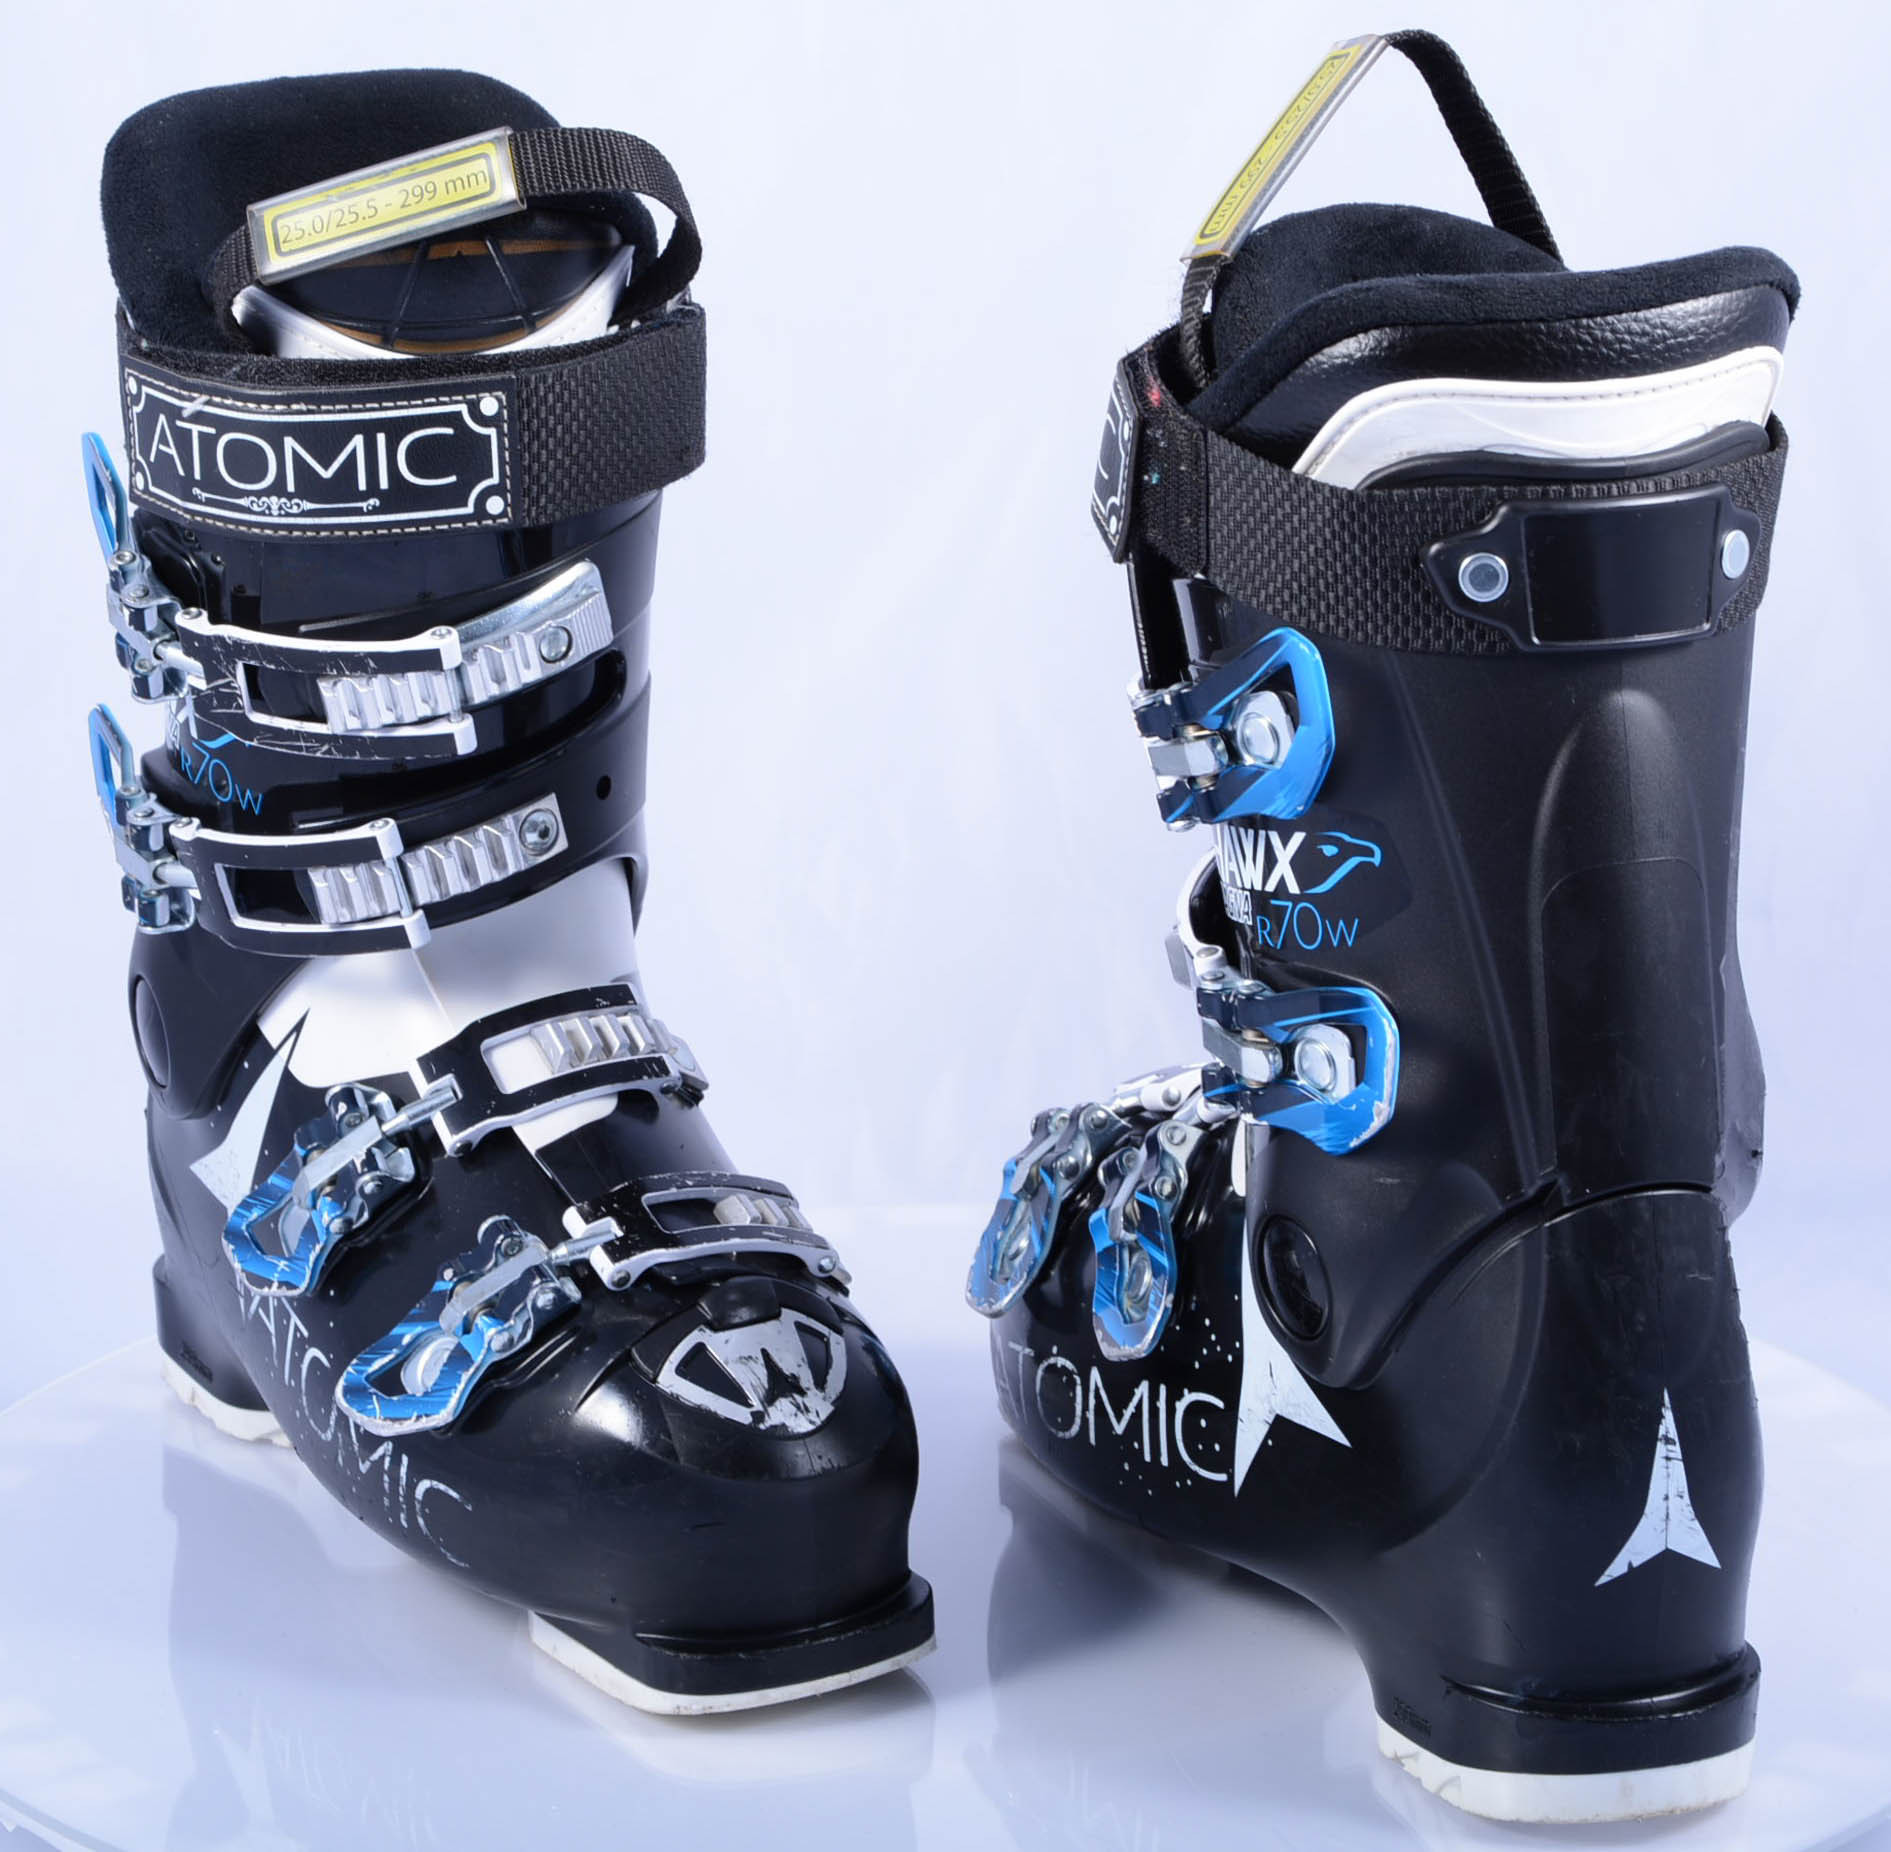 wacht vorst Deskundige dames skischoenen ATOMIC HAWX MAGNA R70 W, BLACK/blue, atomic bronze,  micro, macro - Mardosport.nl